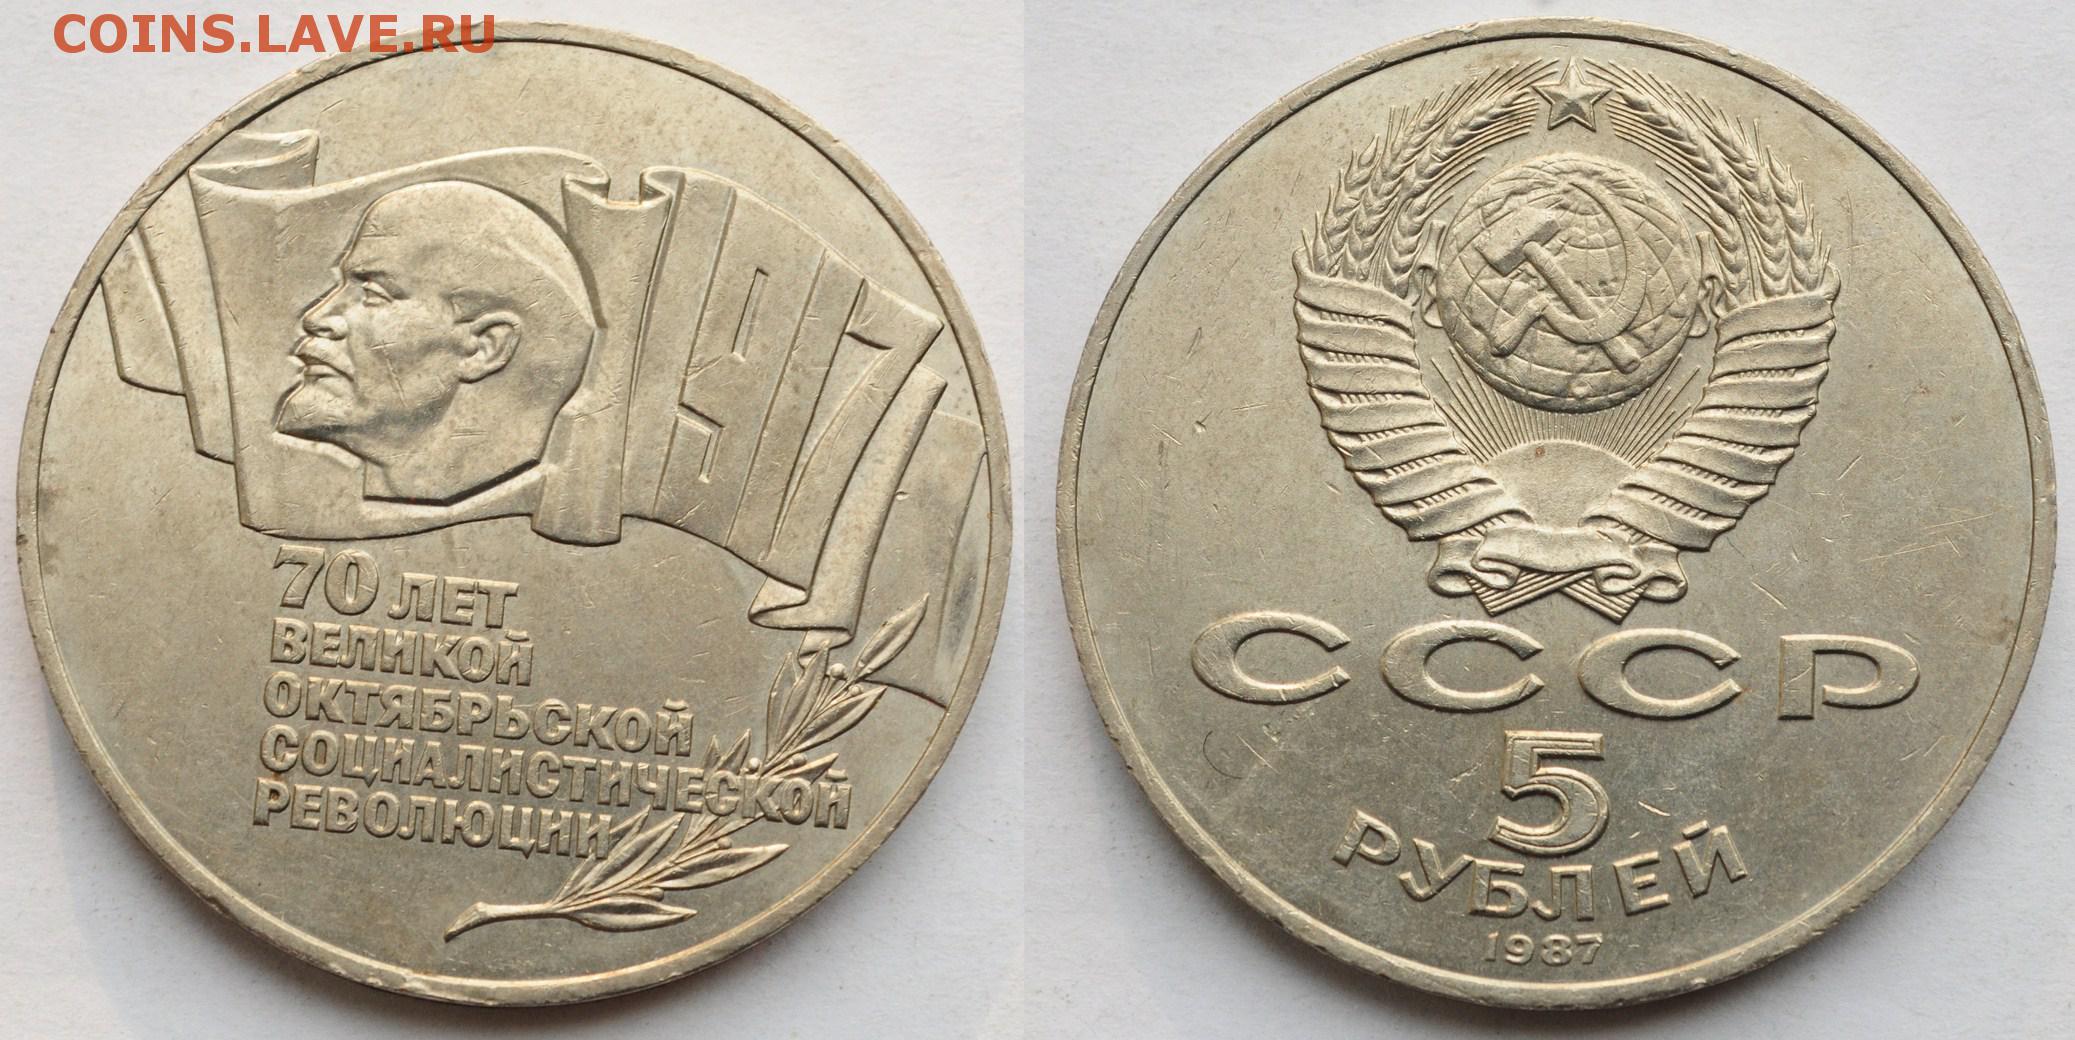 Сколько стоит советский рубль монета. 5 Рублей 1987 года 70 лет Октябрьской революции. 1 Рубль 1987 70 лет революции. 5 Рублей 1987. Монеты СССР 1 рубль 1987.